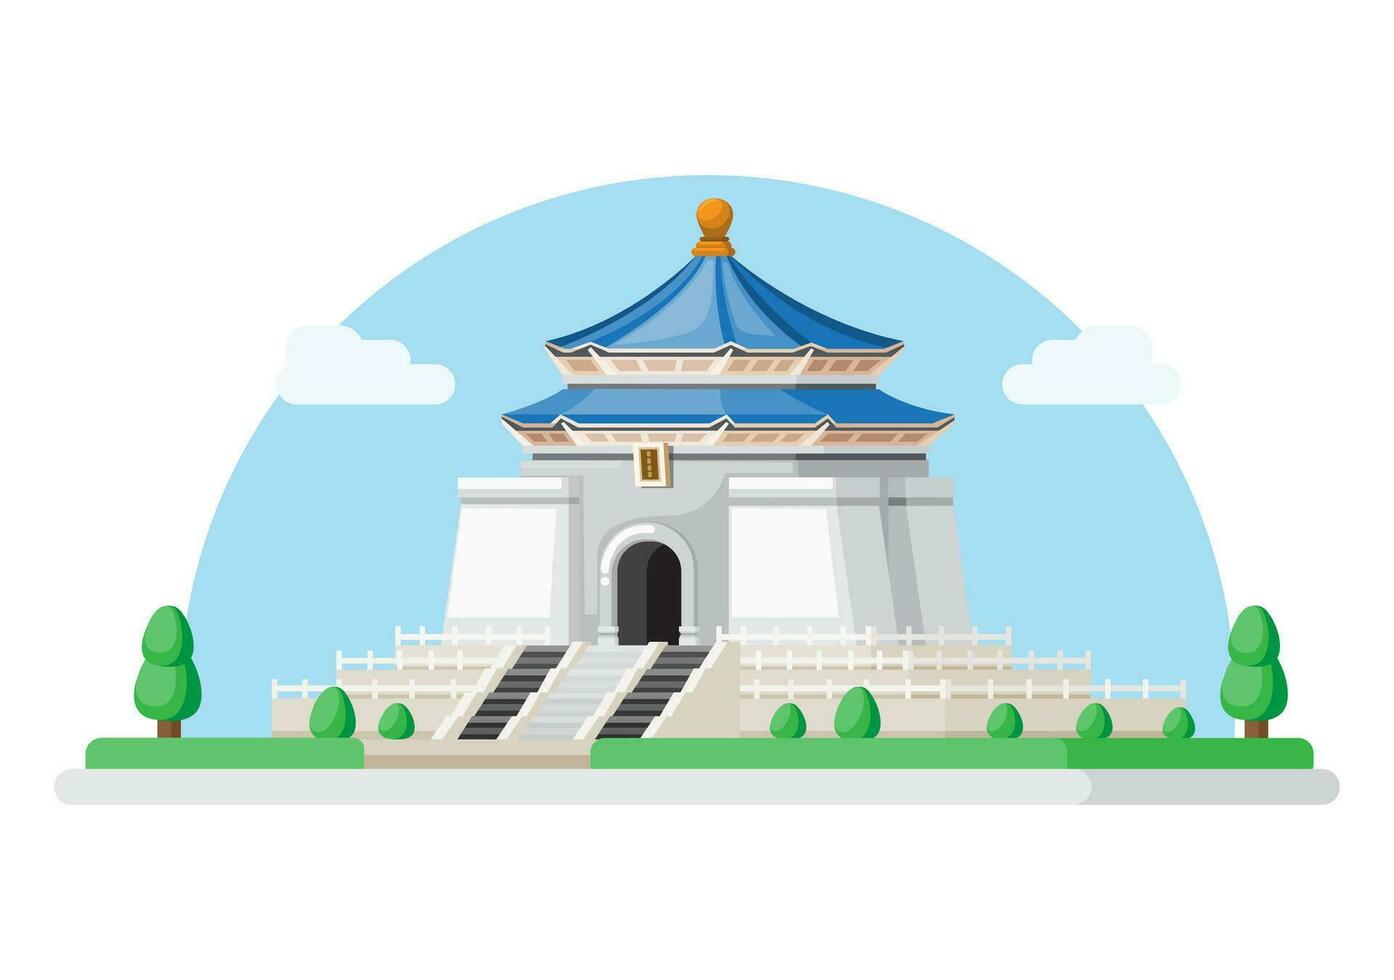 chiang kai shek Mémorial salle bâtiment point de repère de Taïwan Asie. plat dessin animé illustration vecteur